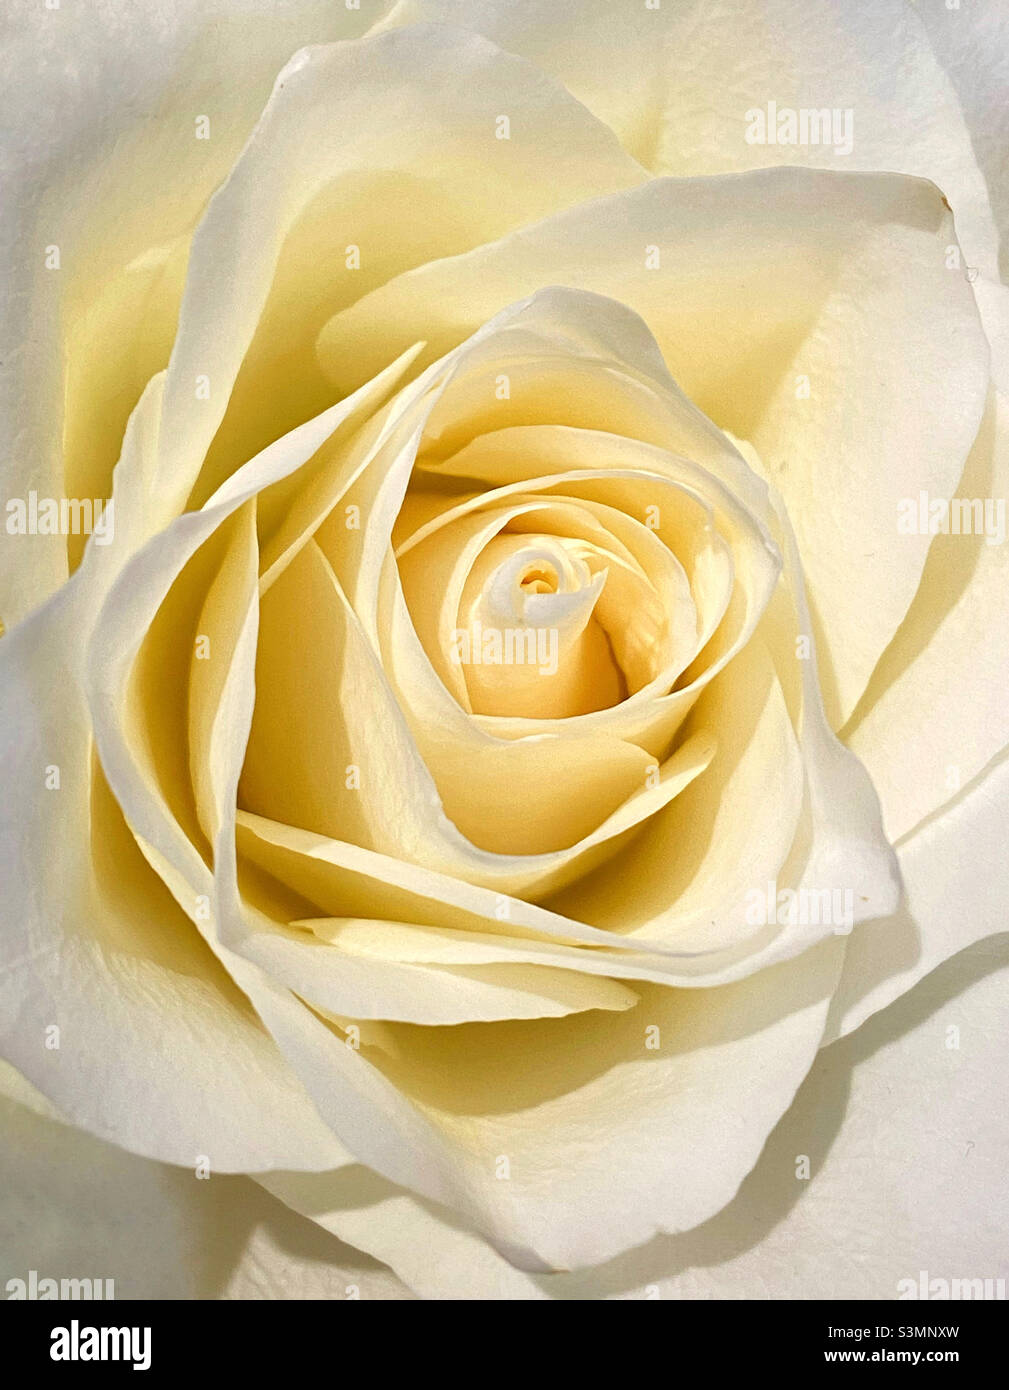 Chiudi nel dettaglio la testa di un fiore di rose color crema o giallo chiaro. I petali interbloccanti sono chiaramente visibili. Una buona immagine con molto potenziale. Foto ©️ COLIN HOSKINS. Foto Stock